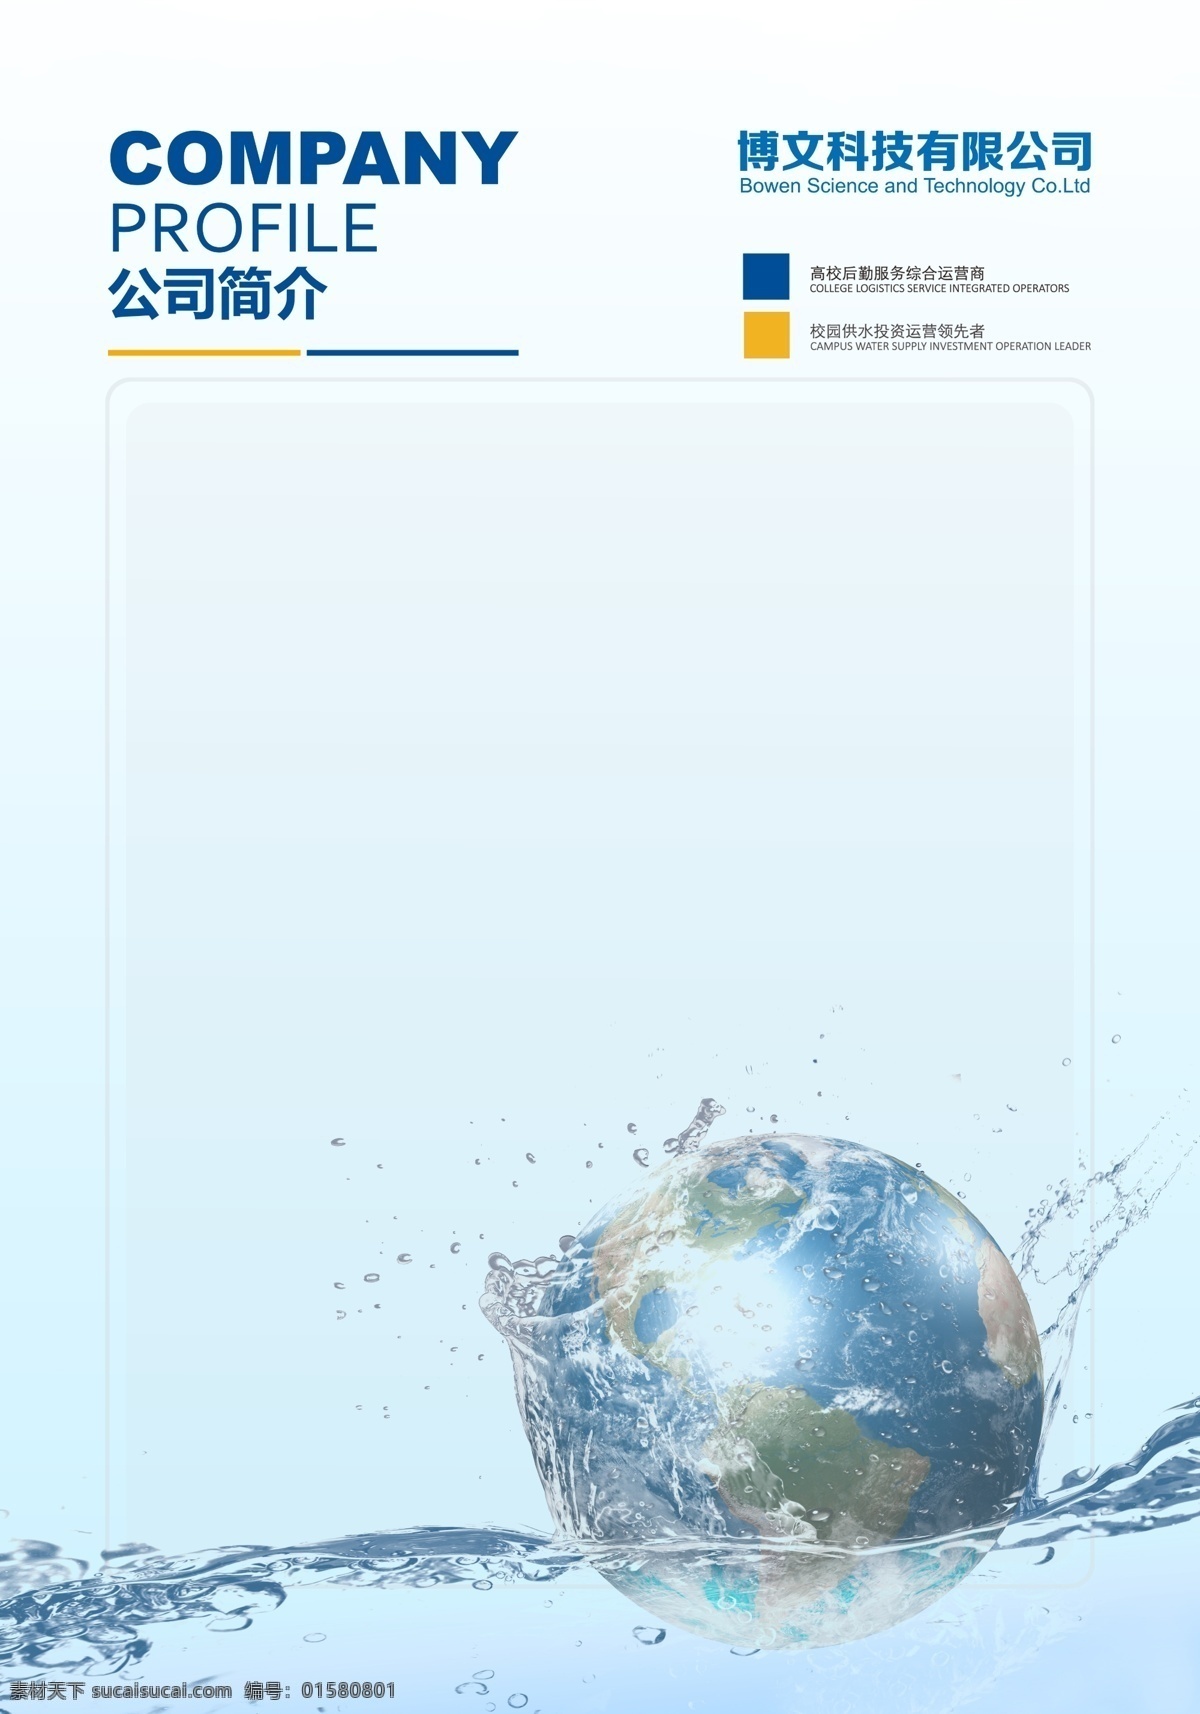 蓝色 展板 背景 分层 蓝色背景展板 公司介绍 规章制度 保护水资源 底纹边框 背景底纹